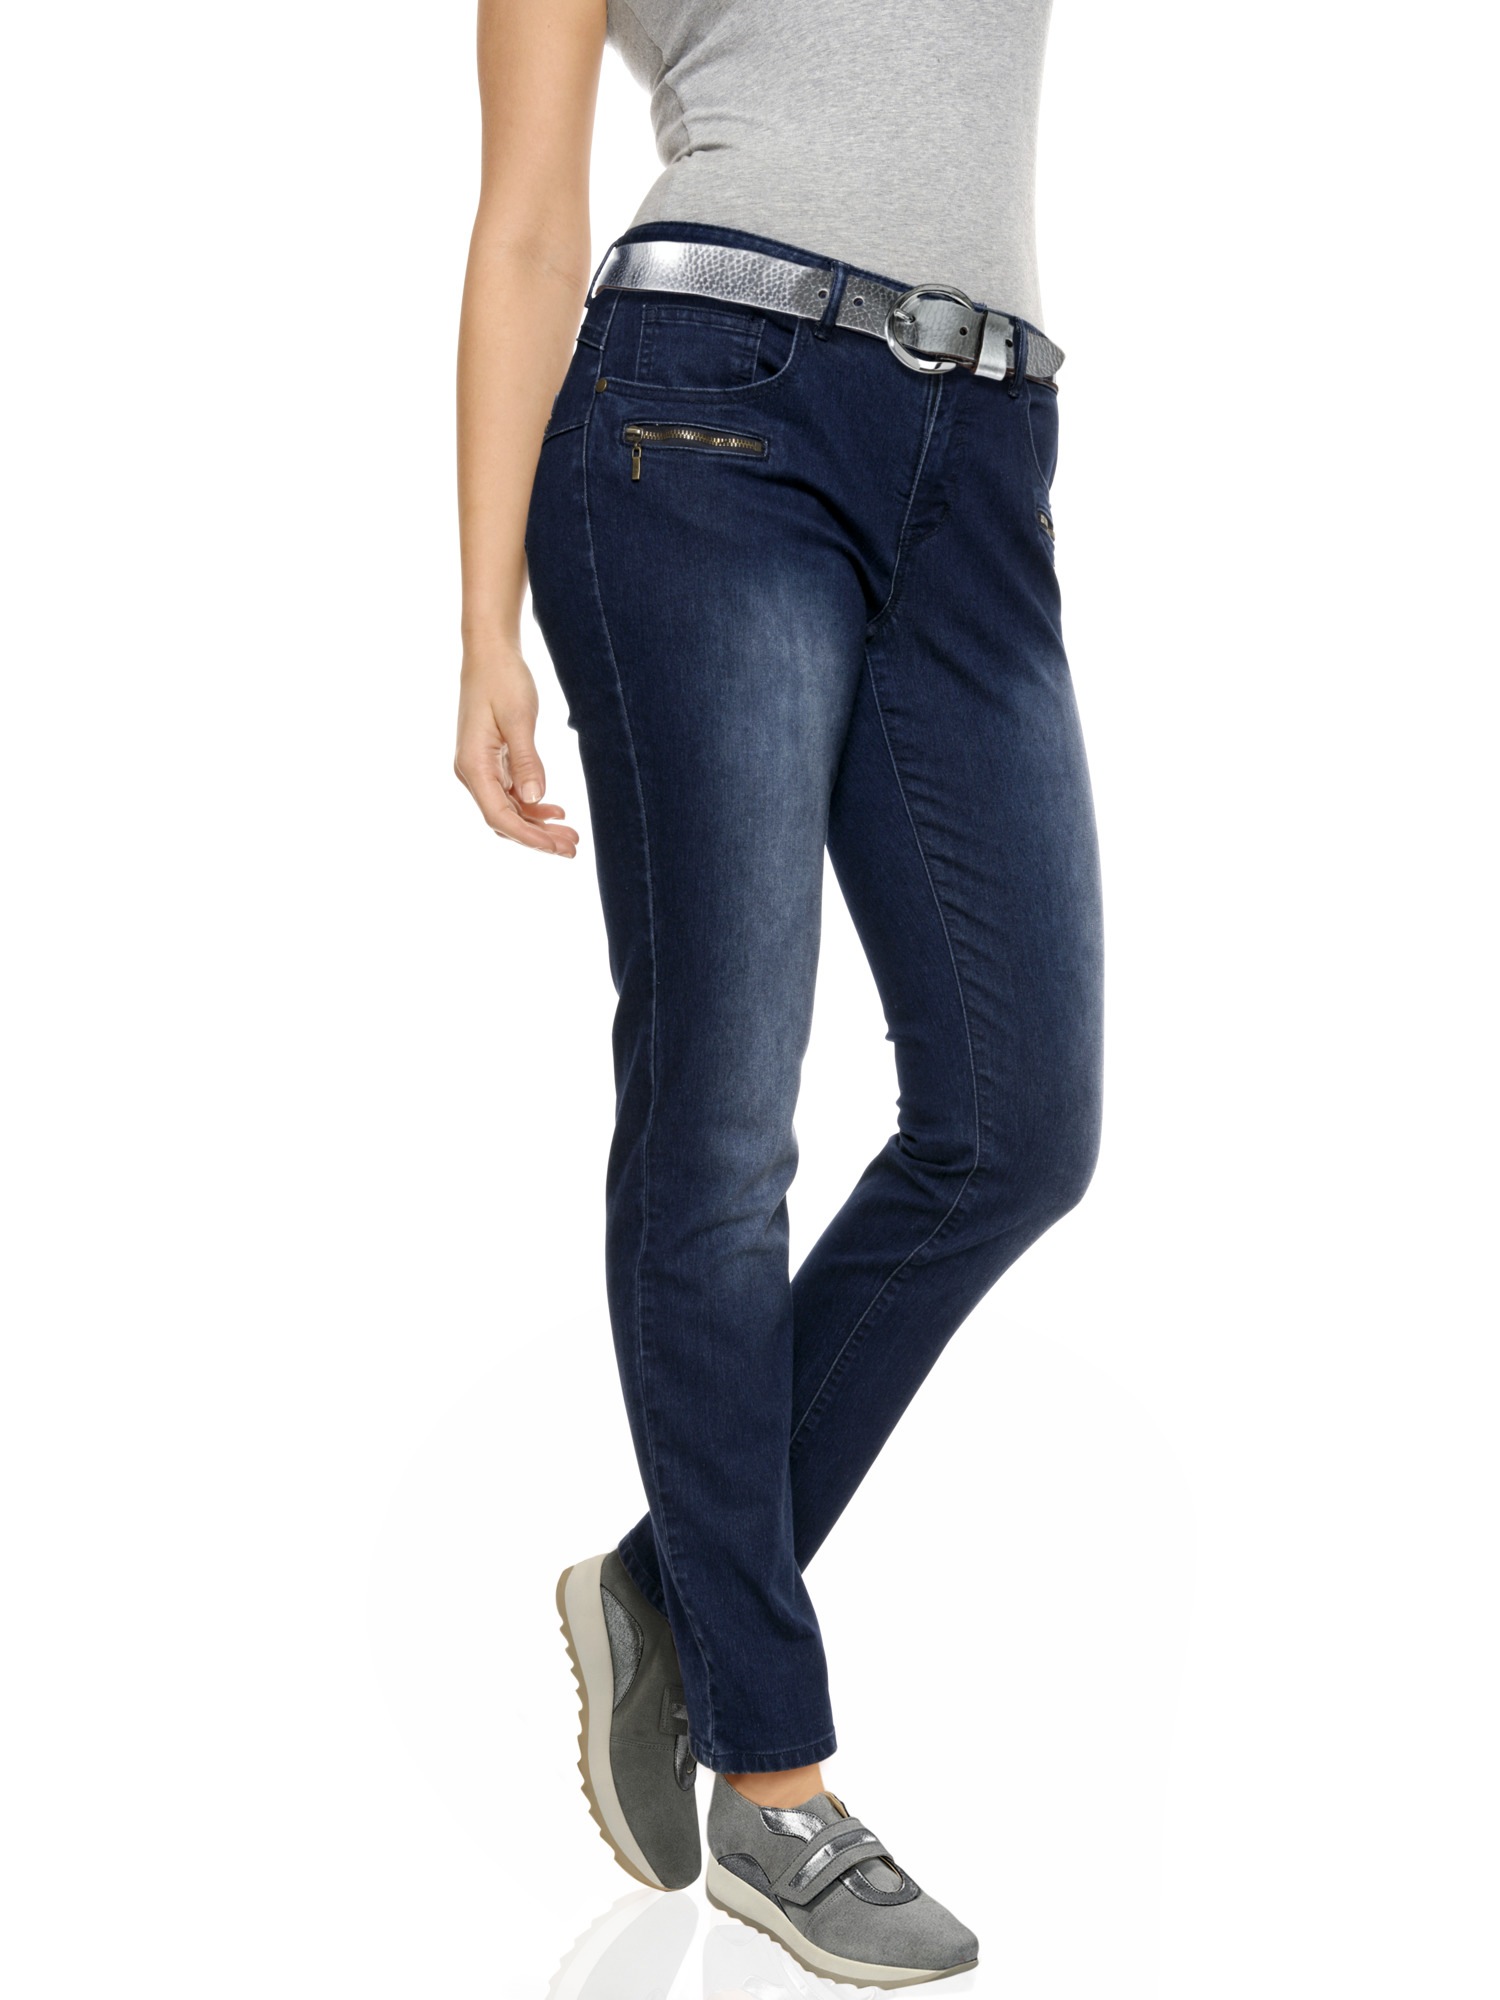 Bauchweg Jeans Online Bestellen Baur